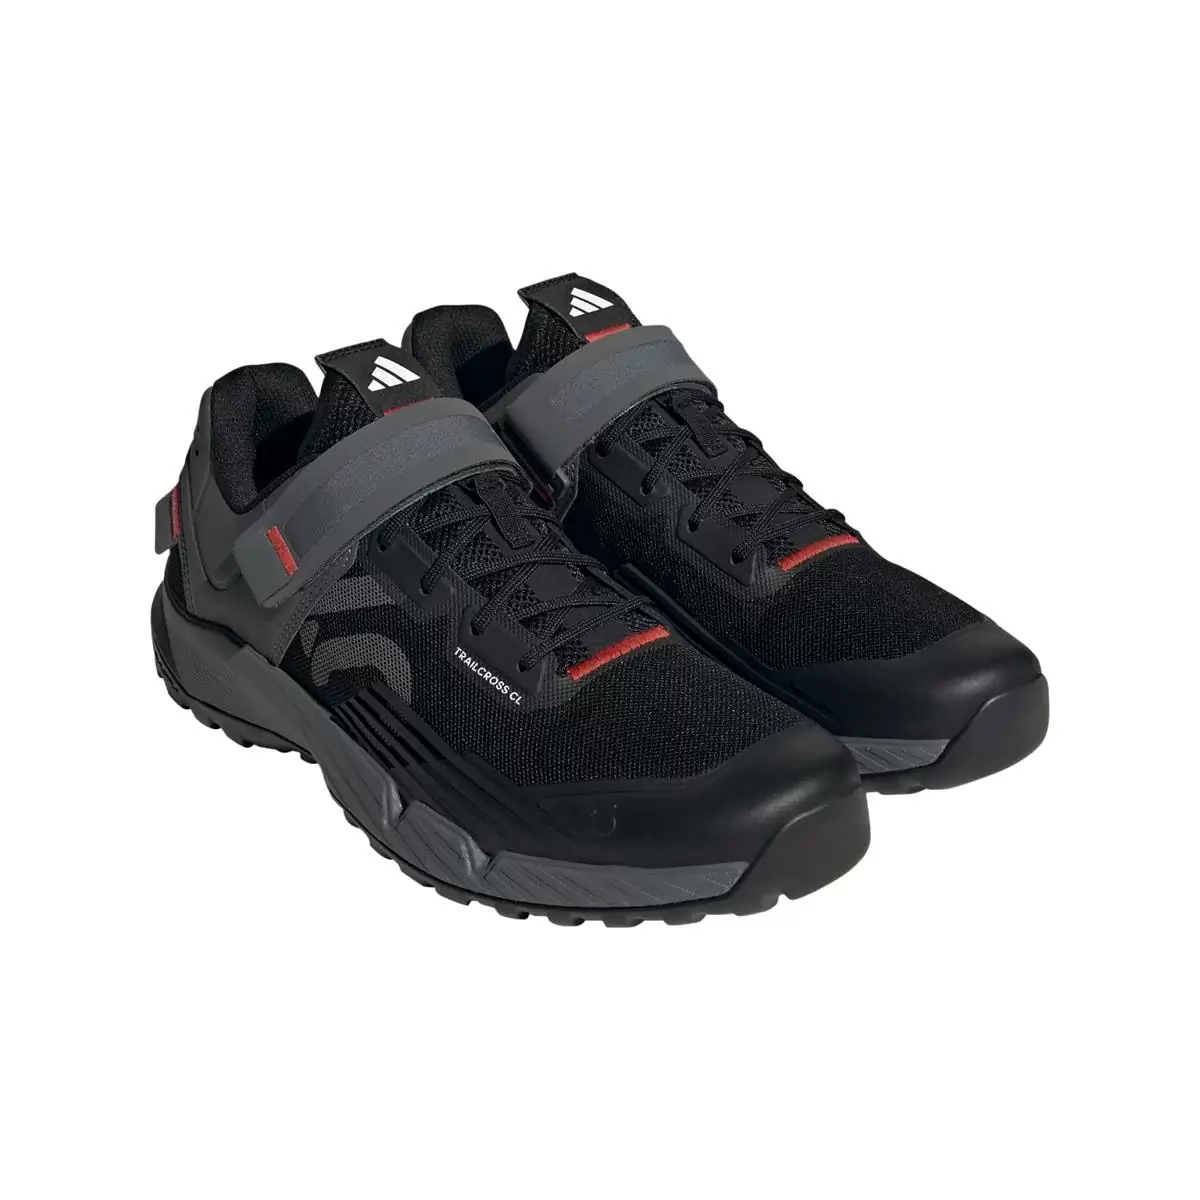 Clip 5.10 Trailcross MTB Shoes Black/Grey Size 41 #1